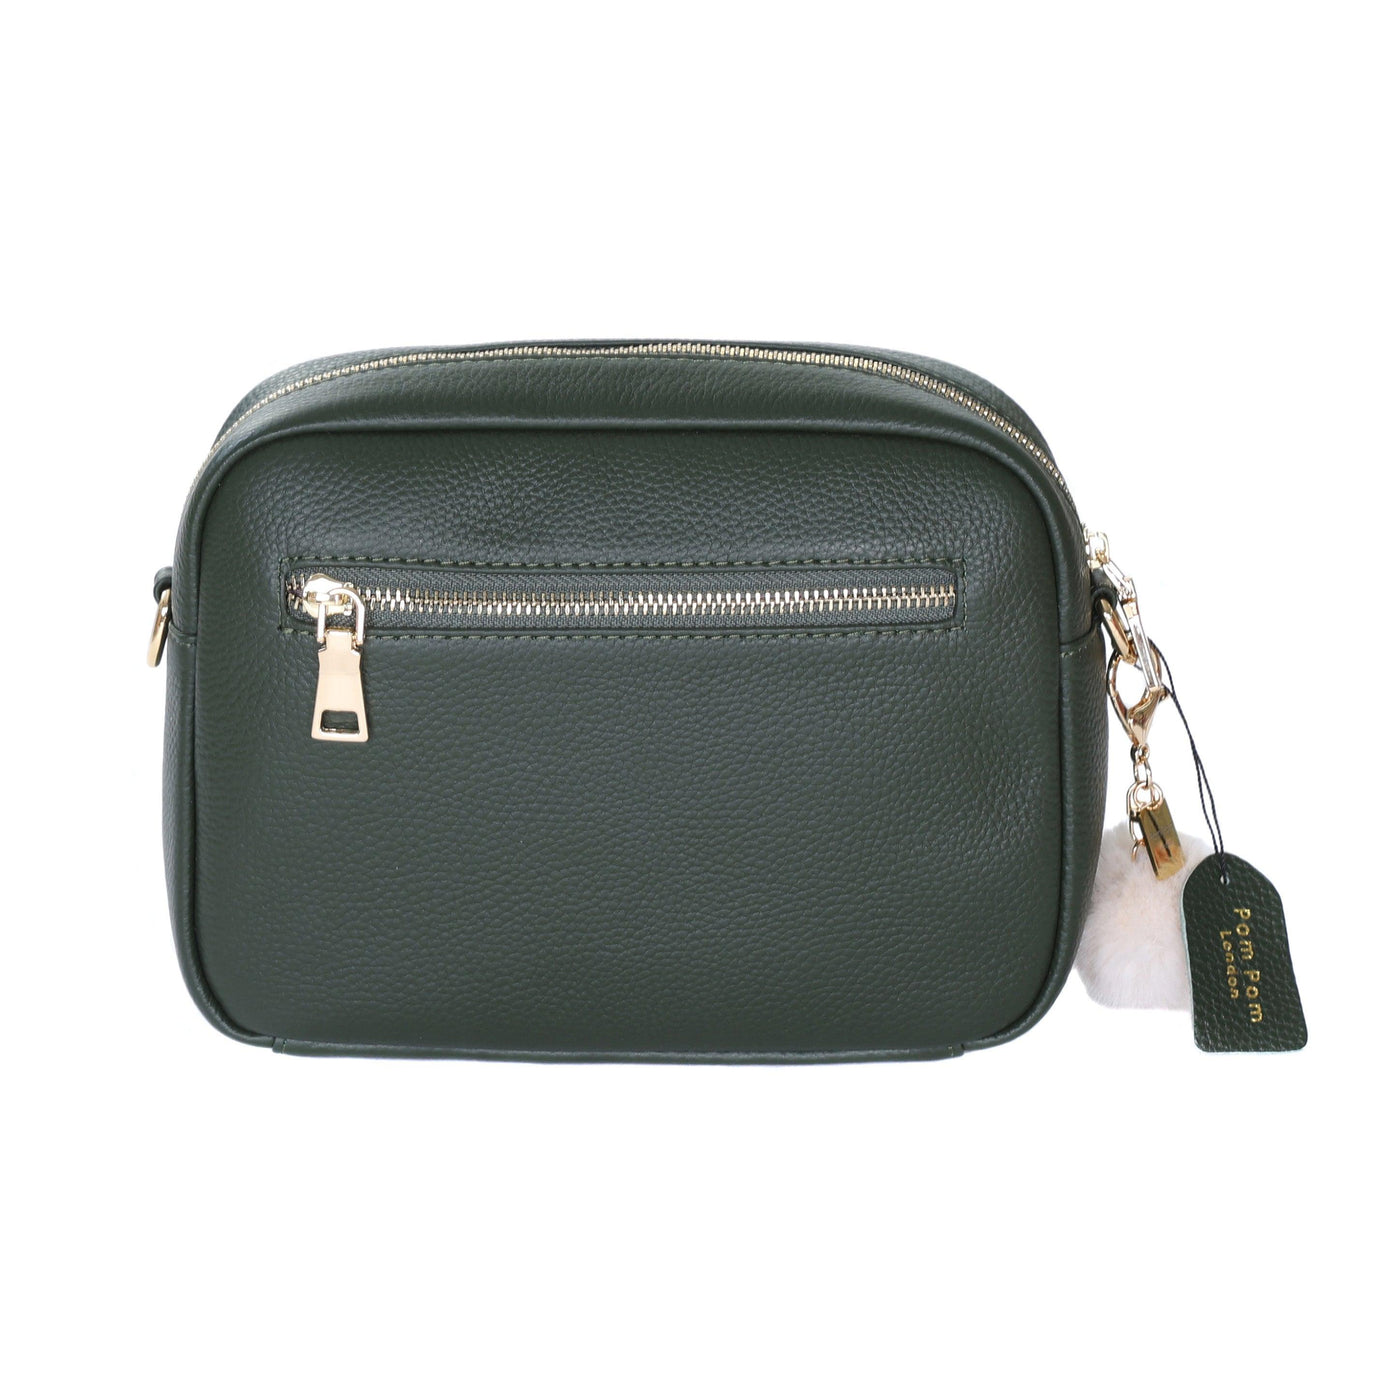 Mayfair Plus Bag Vintage Green & Accessories